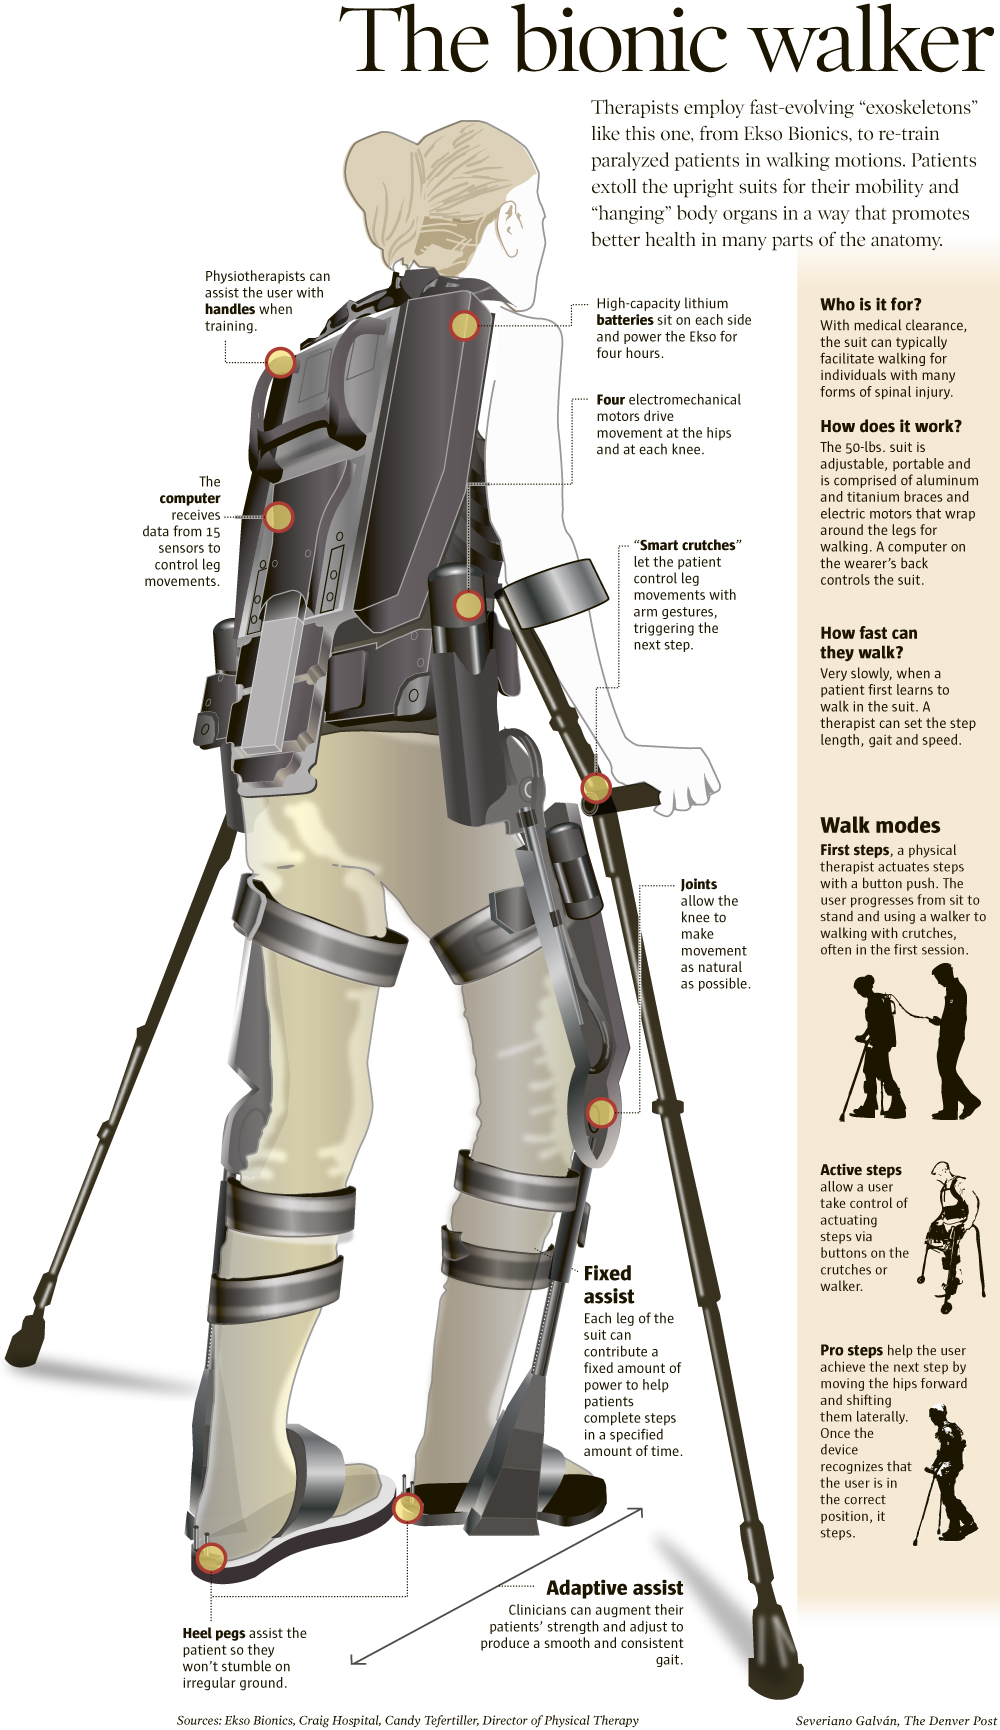 The bionic walker